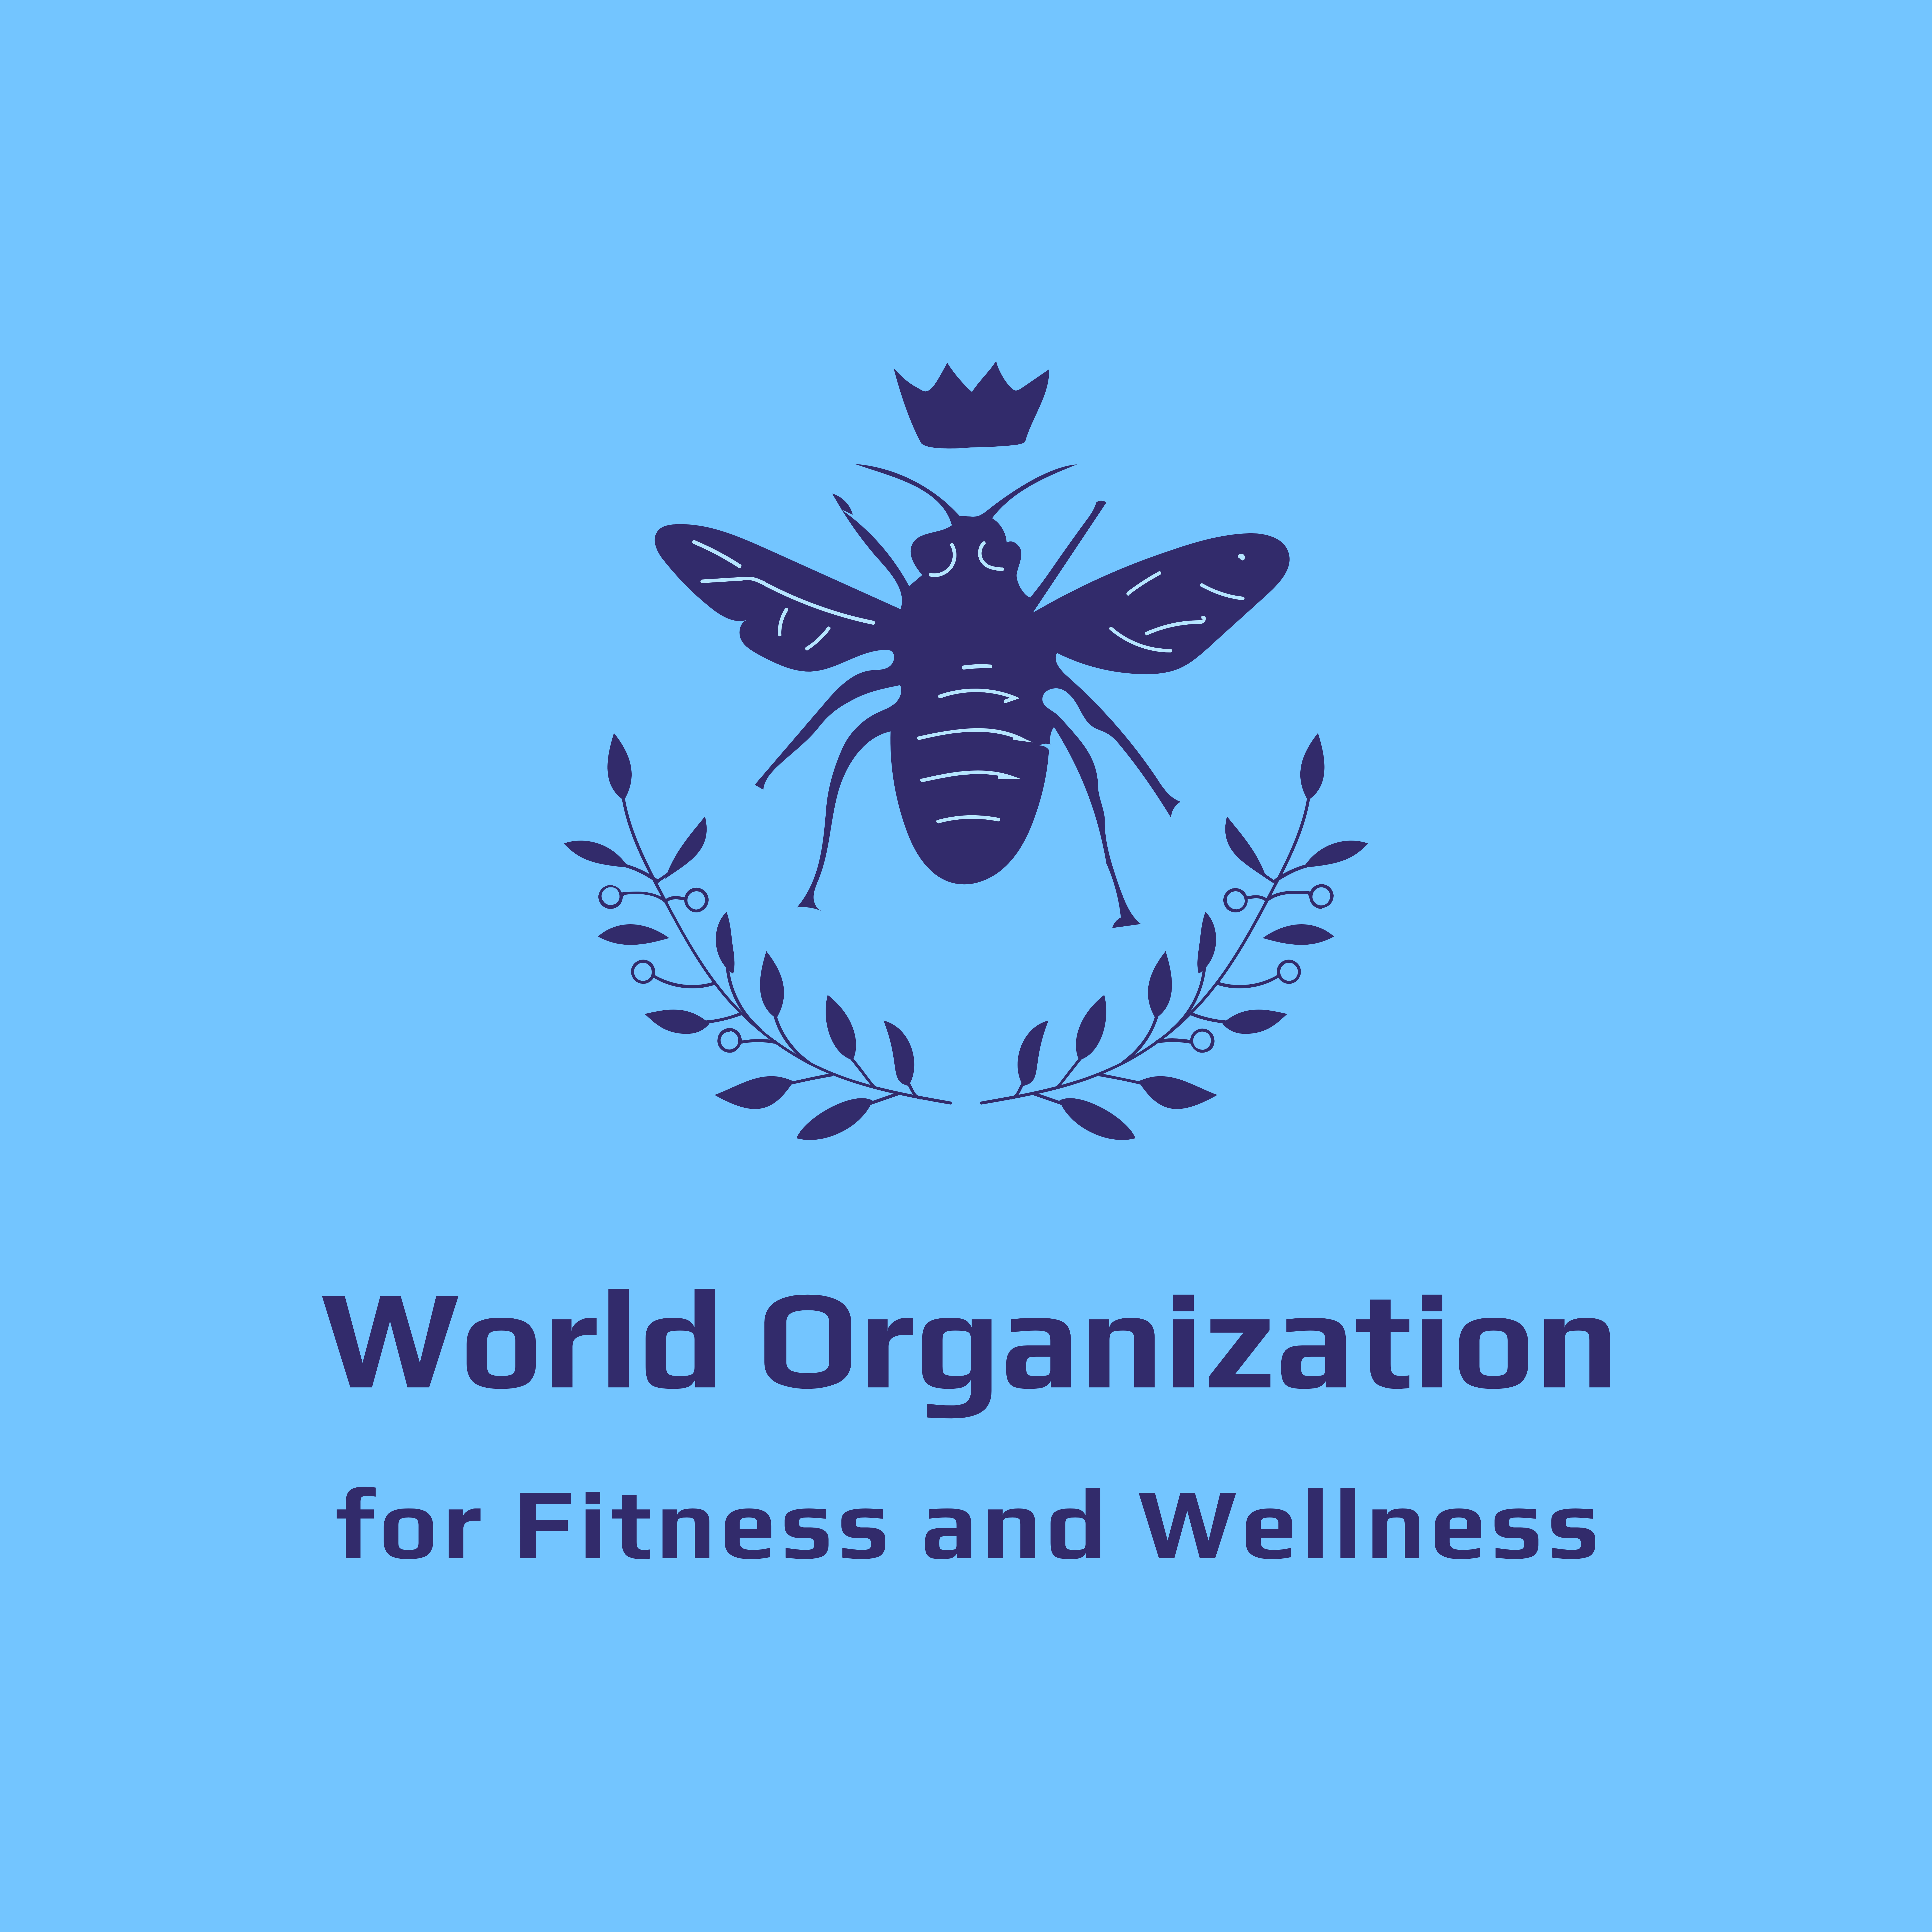 المزيد عن World Organization for Fitness and Wellness